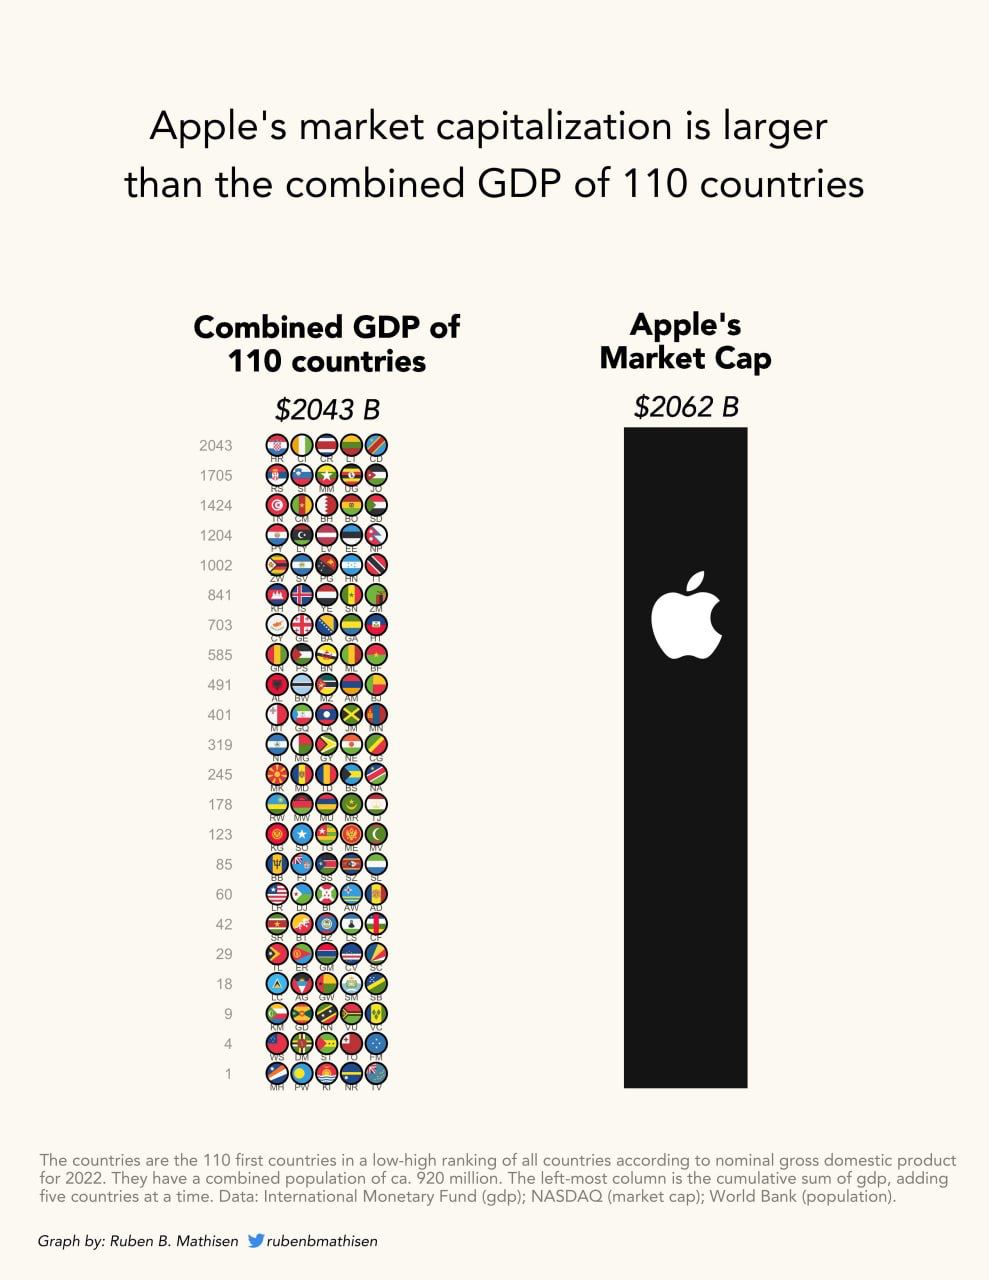 Капитализация Apple в сравнении с ВВП 110 государств в 2022 году